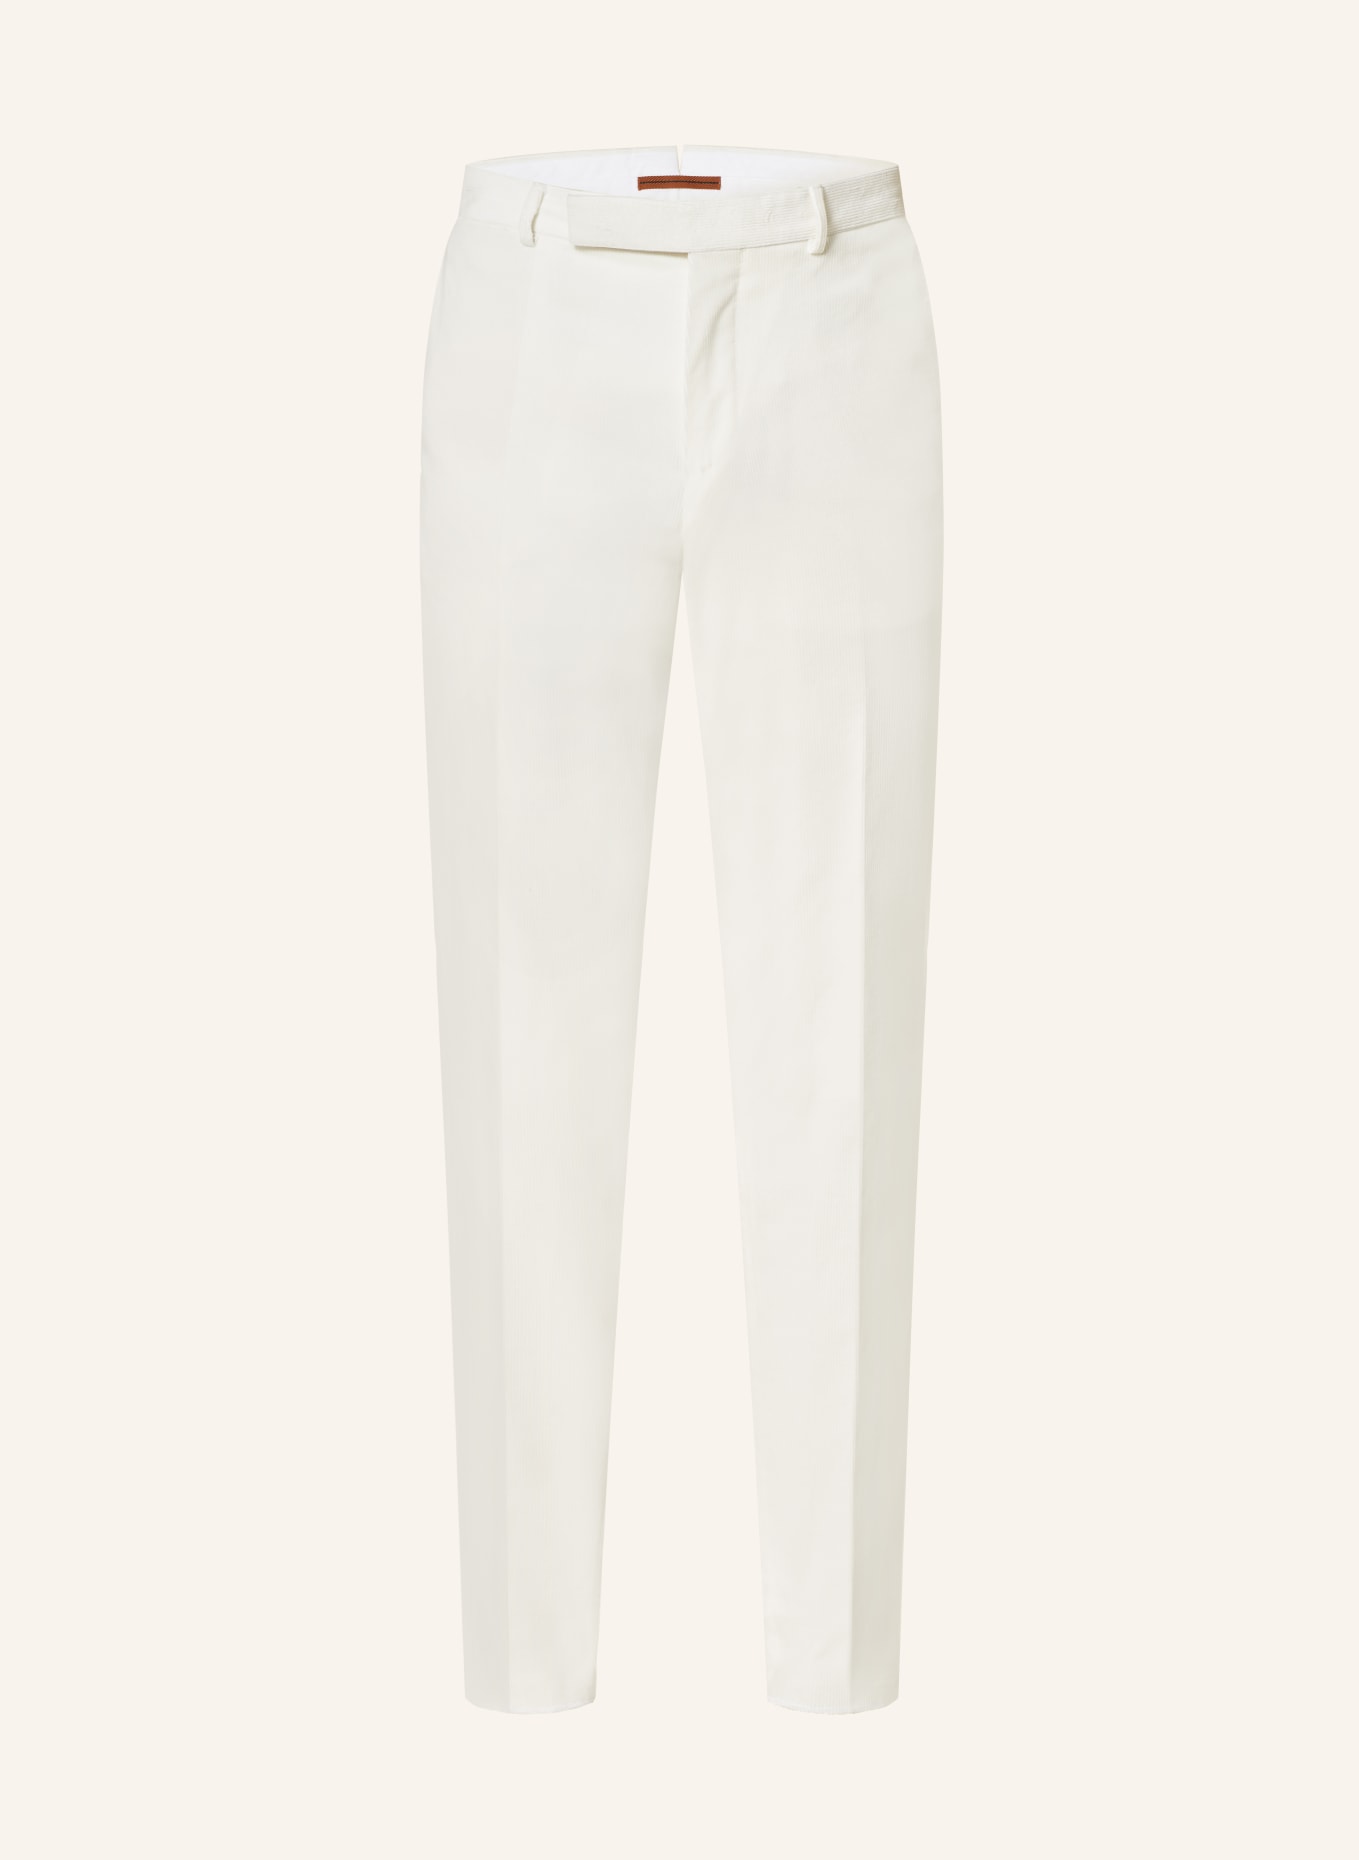 DE PETRILLO Pleated Cotton-Blend Corduroy Trousers for Men | MR PORTER